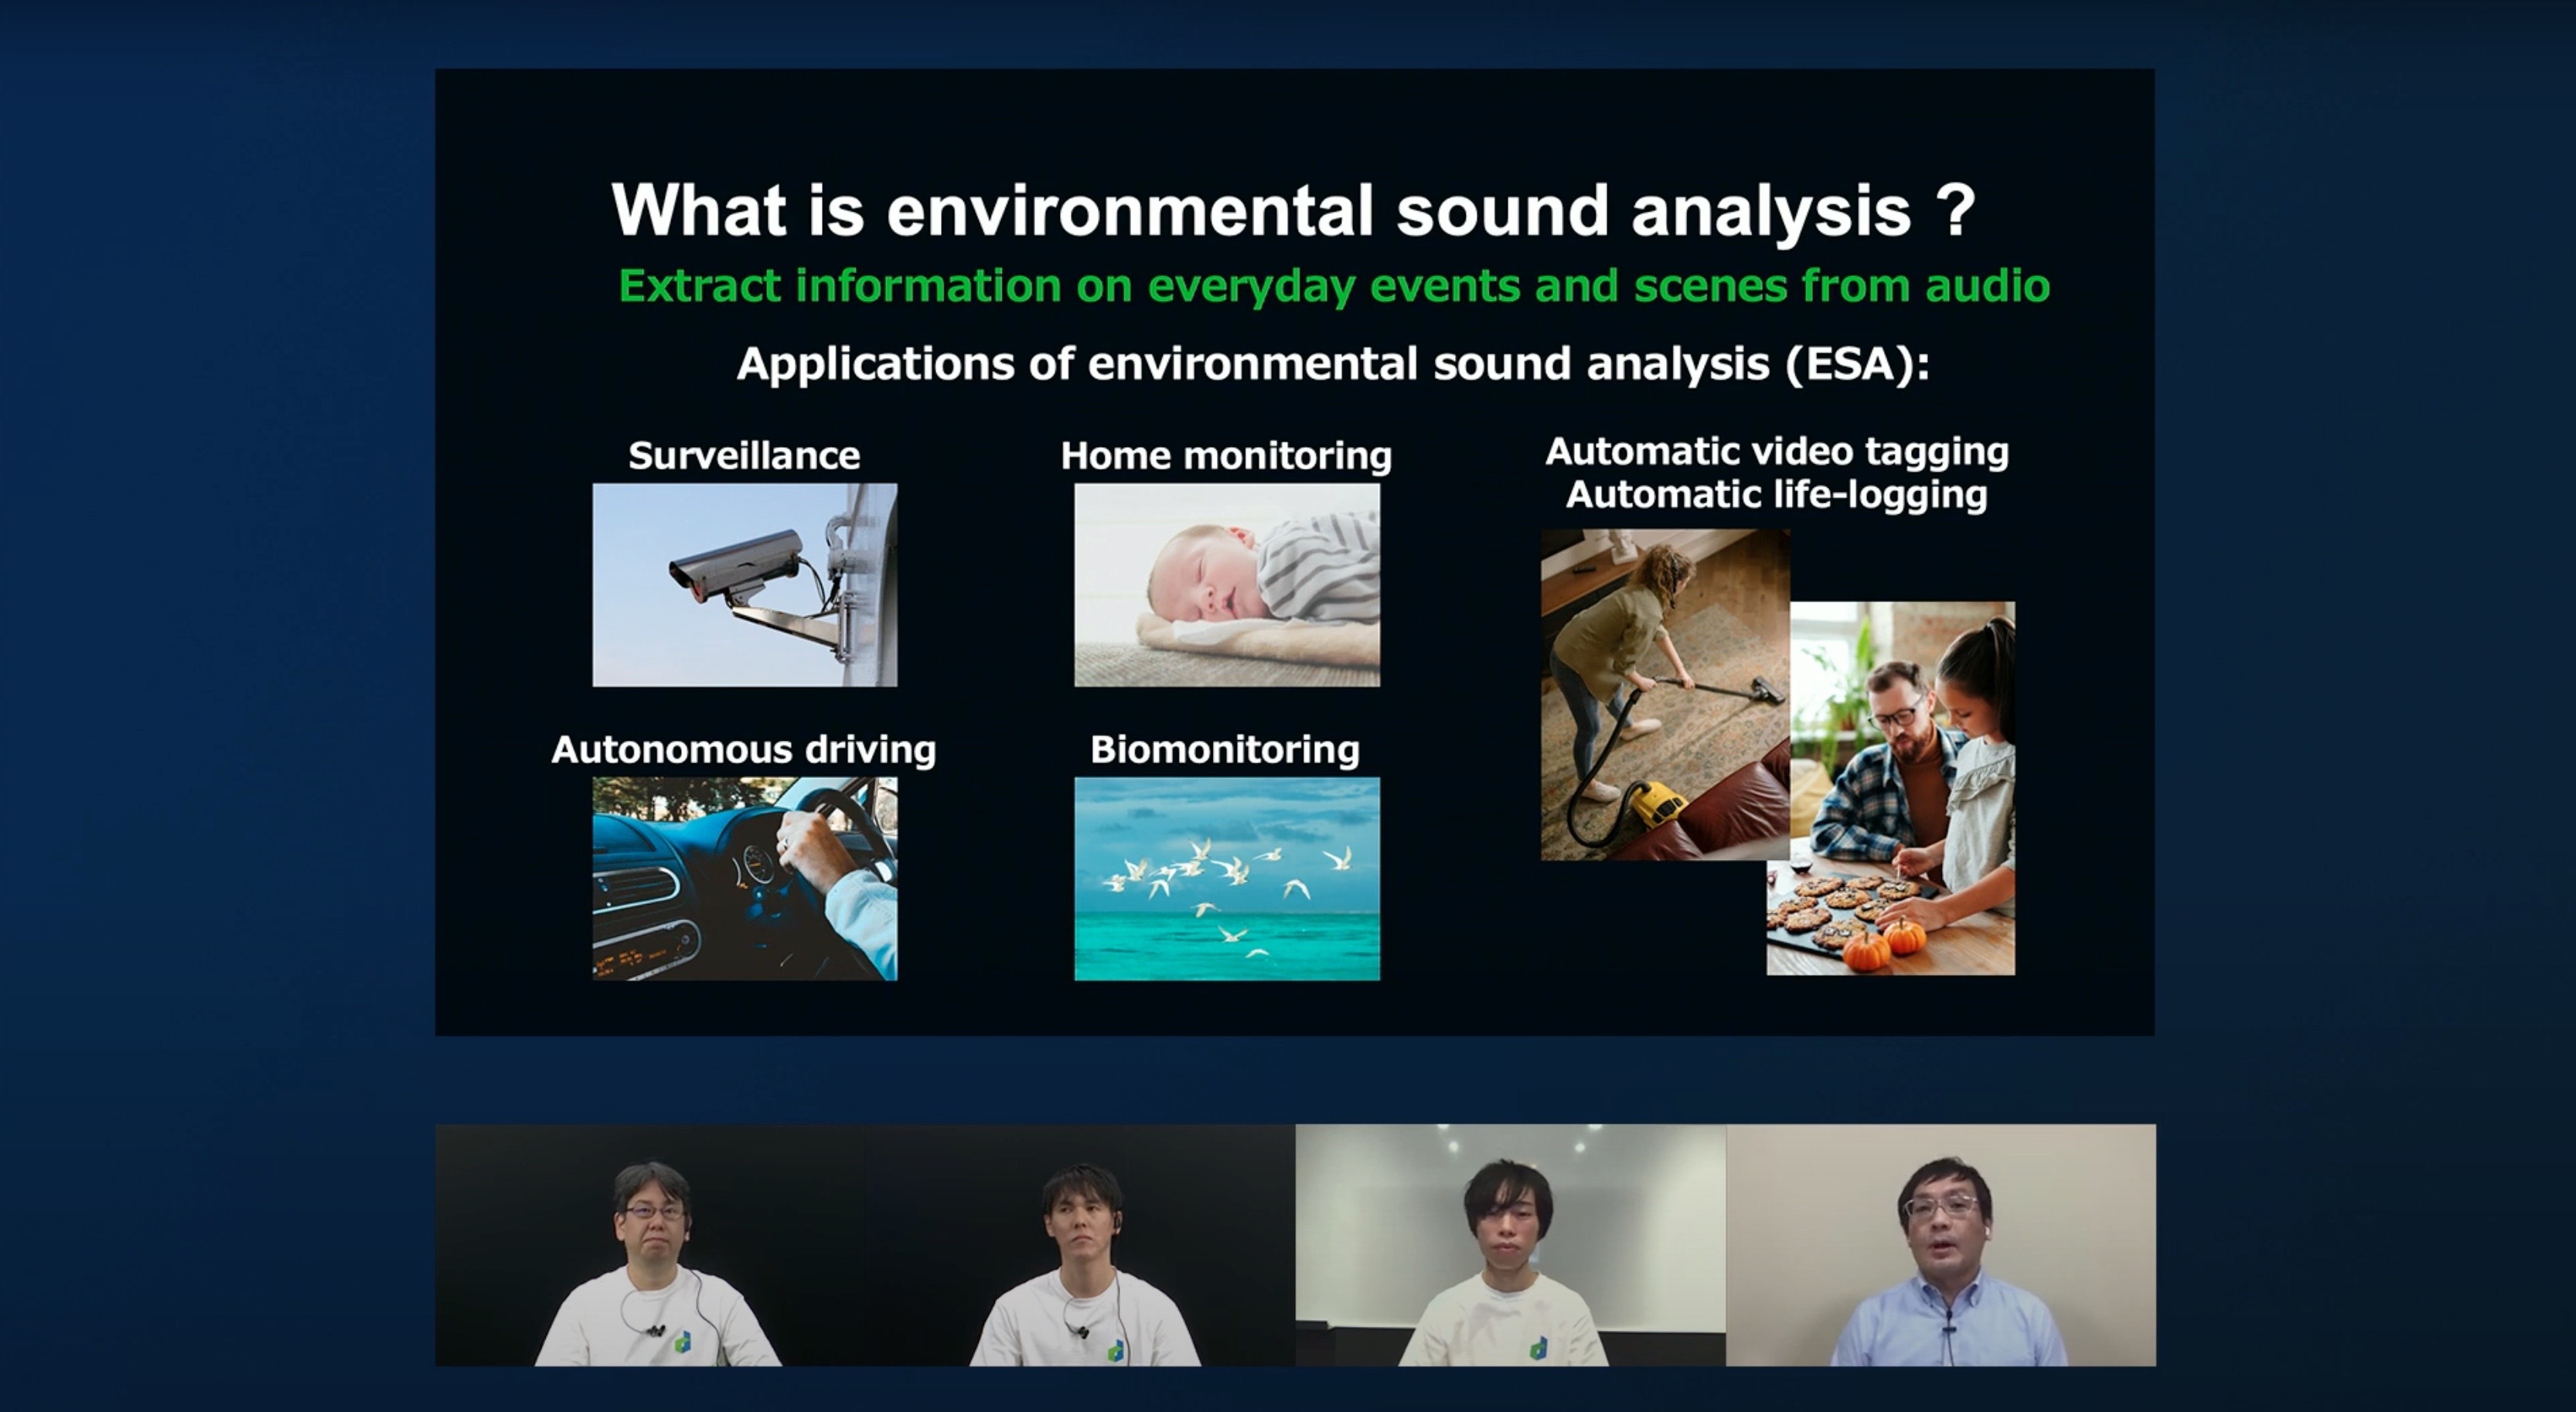 音声認識・音声合成・環境音の研究　音声処理はますますおもしろくなっていく　ここまで来た音声技術